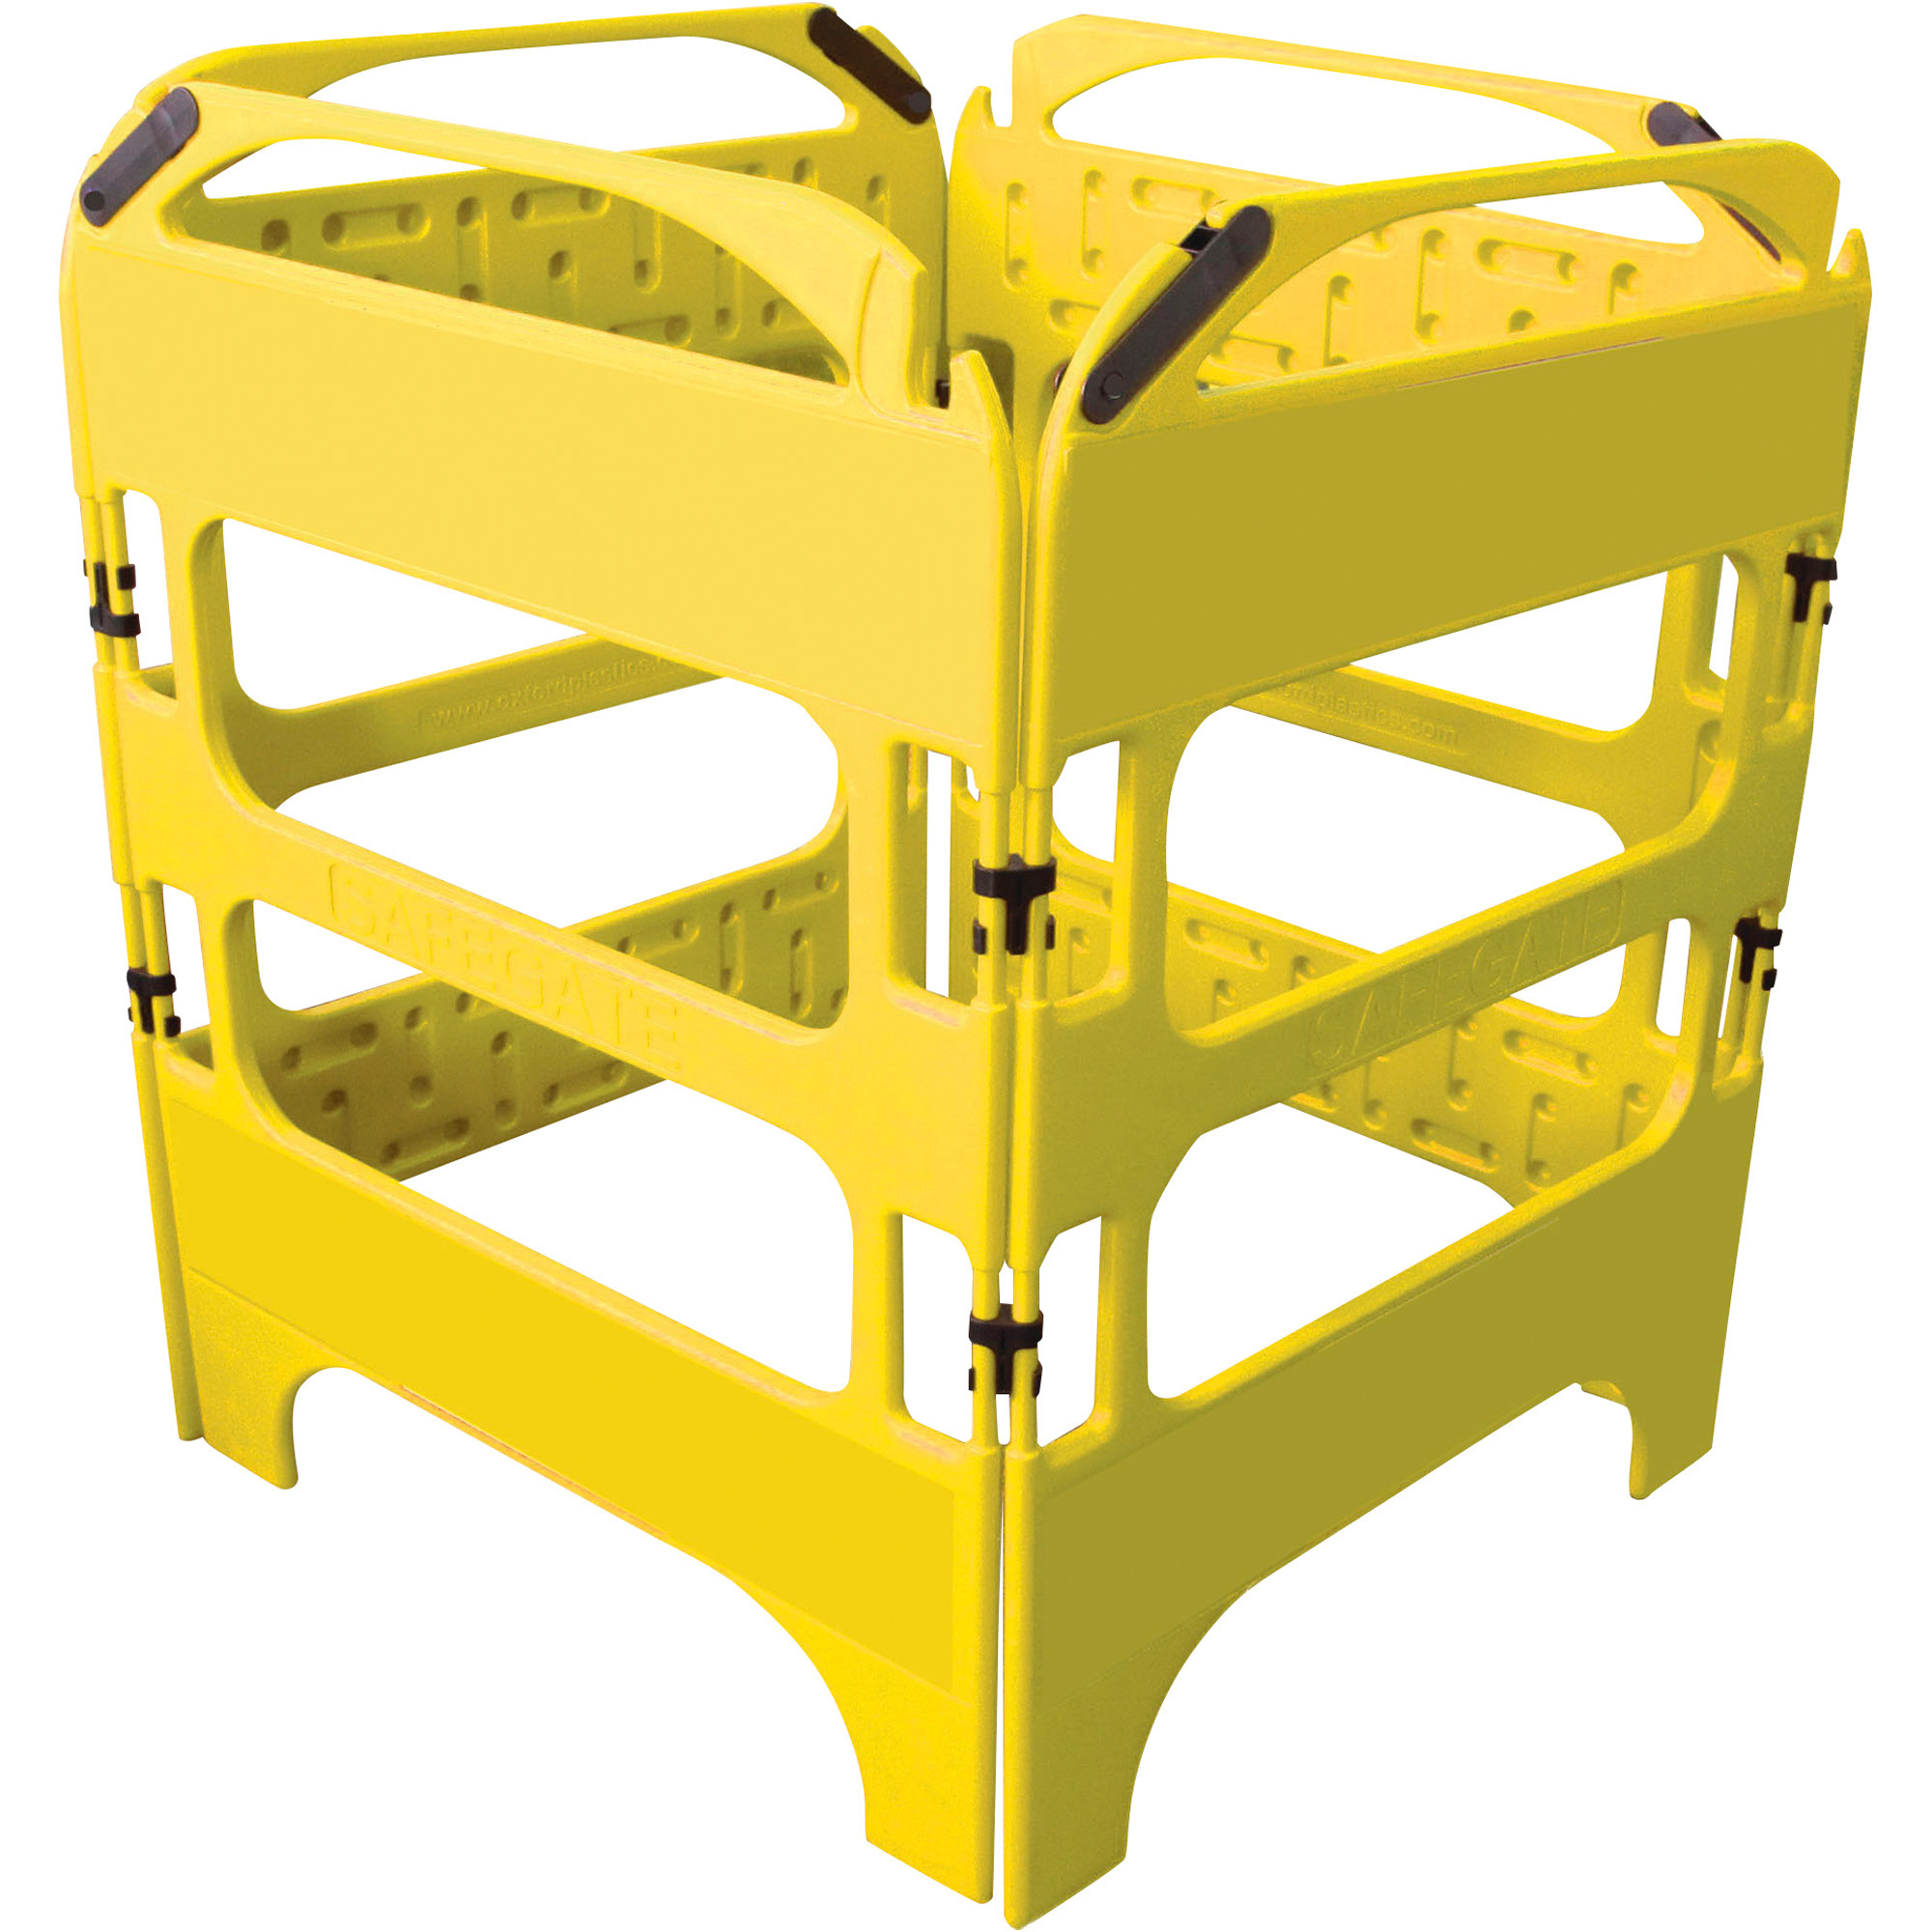 Plasticade Safegate Manhole Guard â Yellow, 29 1/2Inch L x 39 7/16Inch W, Model CSP-SG-4KIT-Y